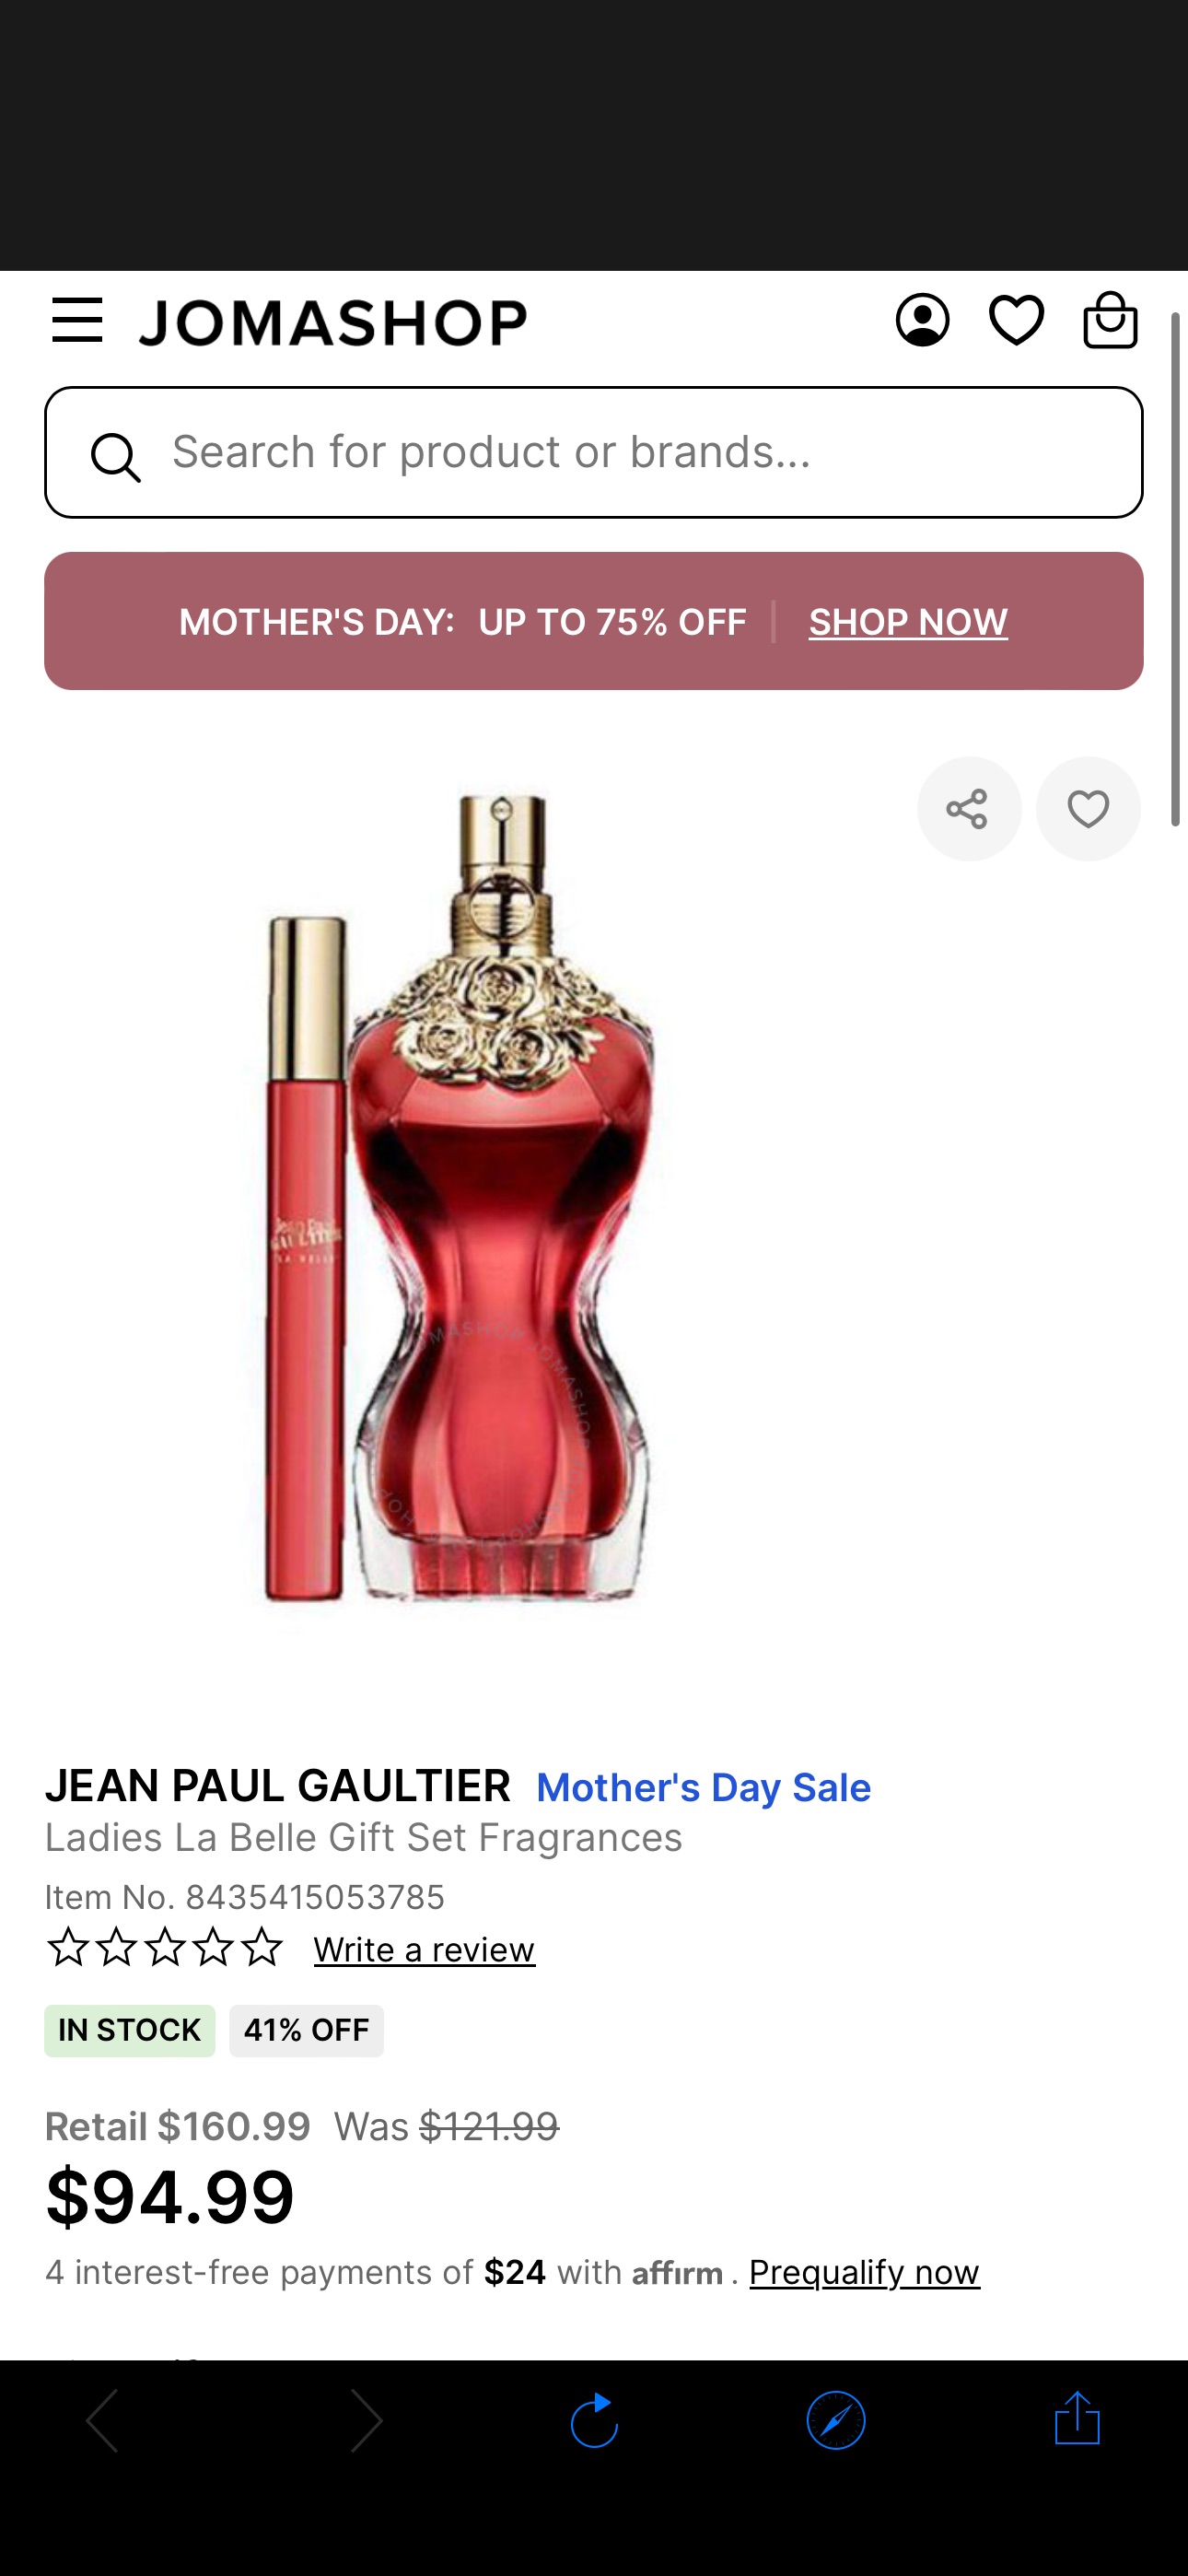 Jean Paul Gaultier Ladies La Belle Gift Set Fragrances 8435415053785 - Fragrances & Beauty, La Belle - Jomashop